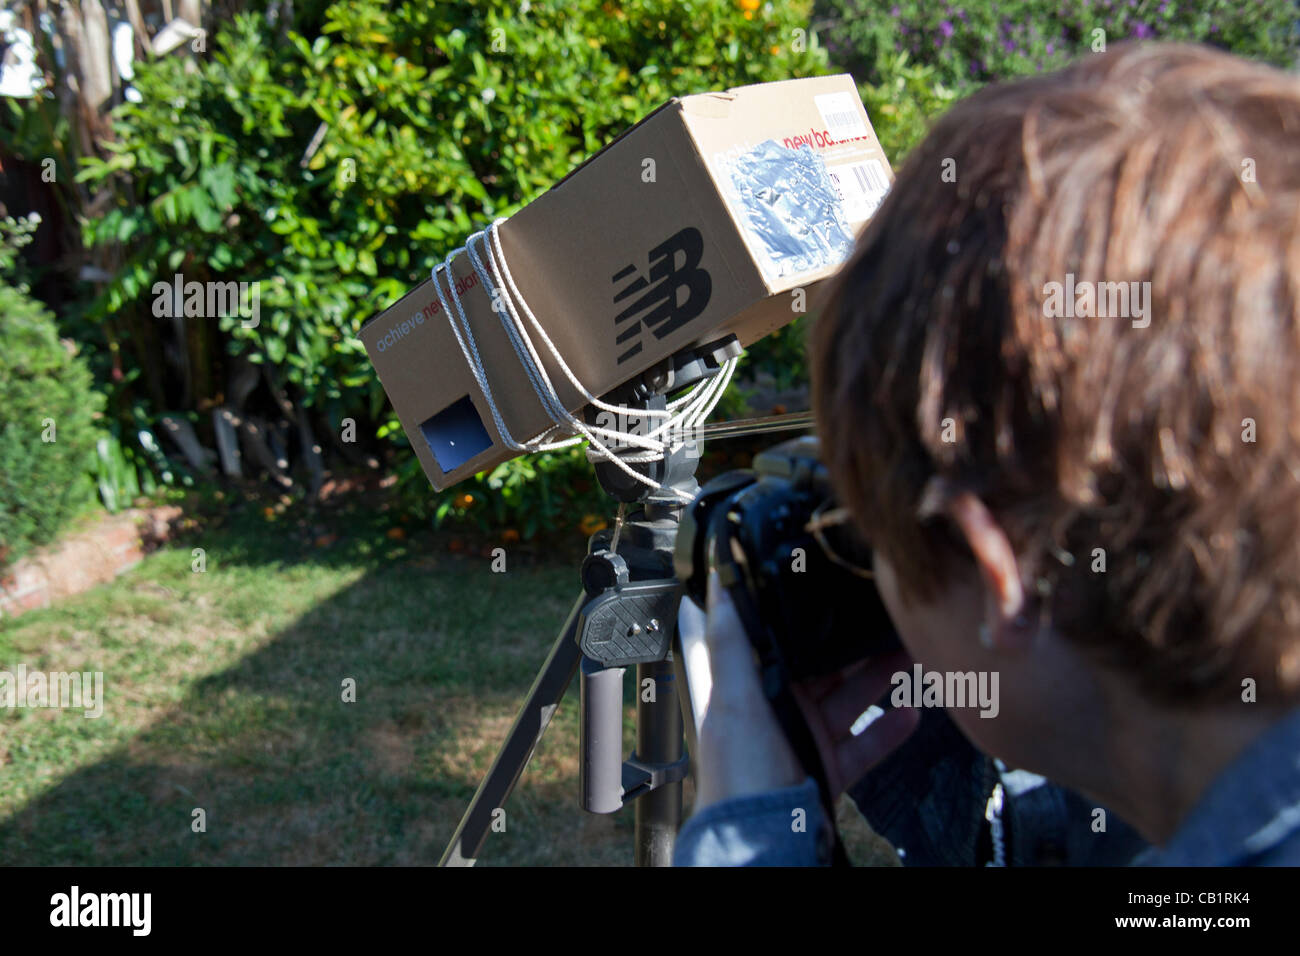 Sharon de San Leandro, Californie, utilise un sténopé maison viewer fait à partir d'une boîte à chaussures et lié à un trépied pour photographier des images du 20 mai 2012, éclipse de soleil à partir de son arrière-cour. Banque D'Images